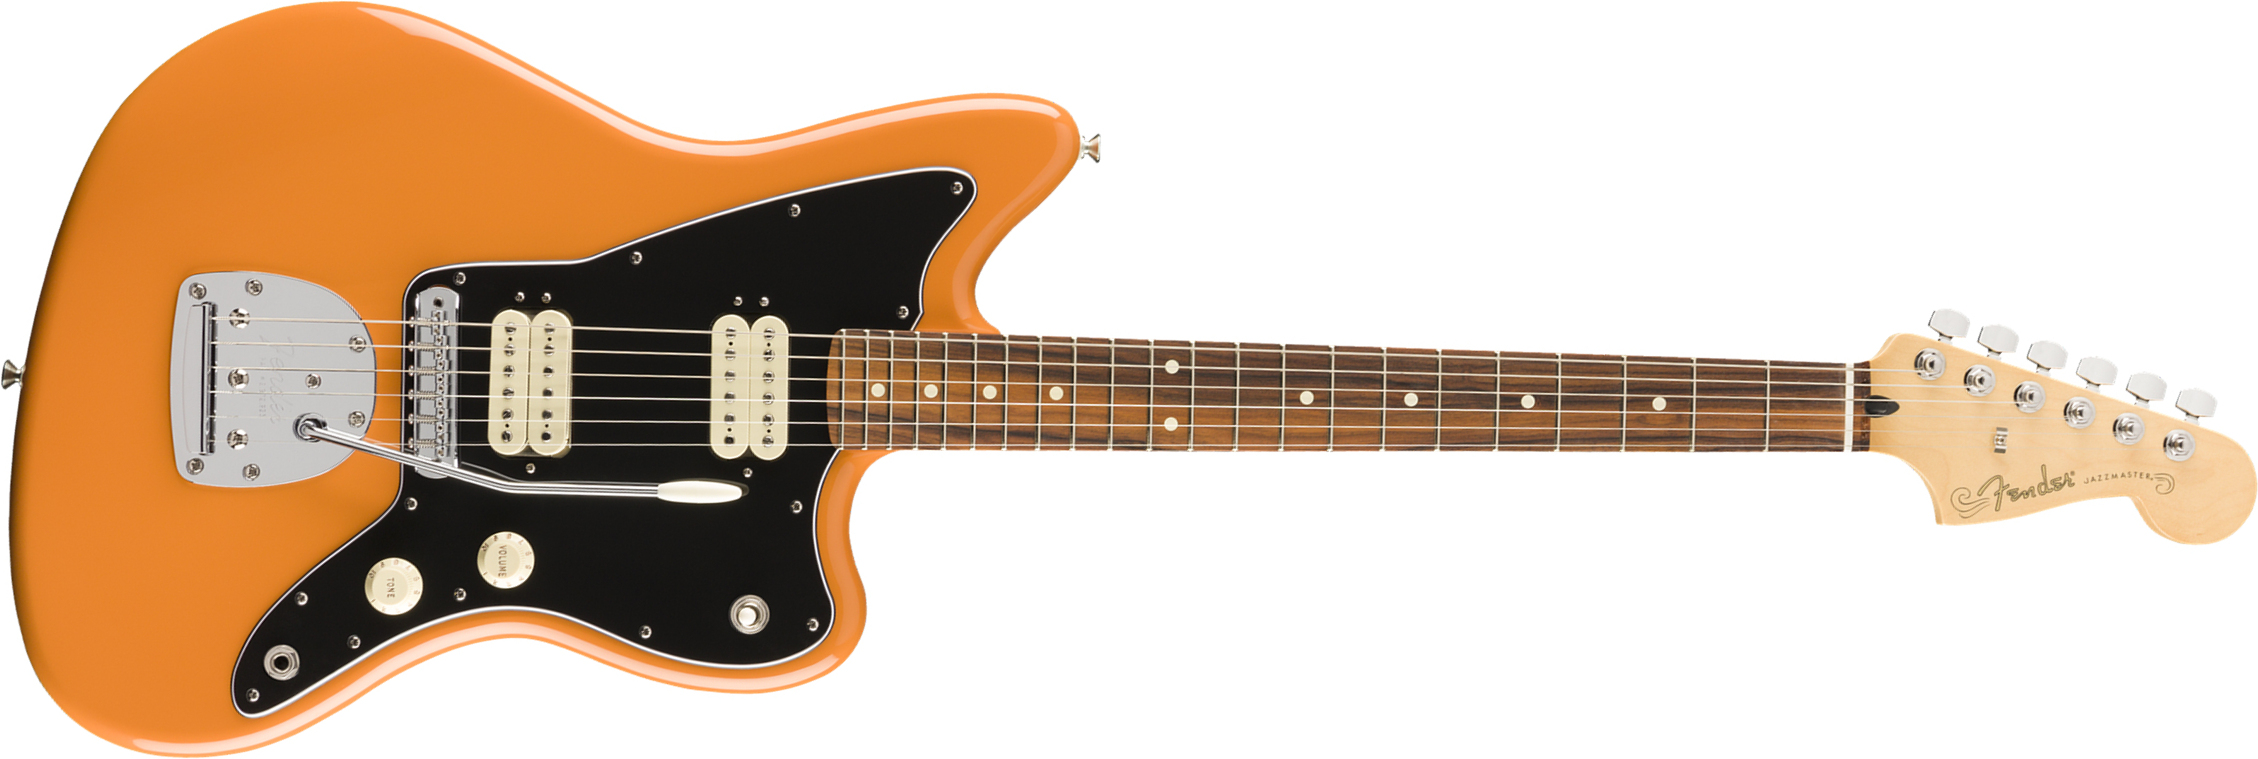 Fender Jazzmaster Player Mex Hh Pf - Capri Orange - Retro-Rock-E-Gitarre - Main picture